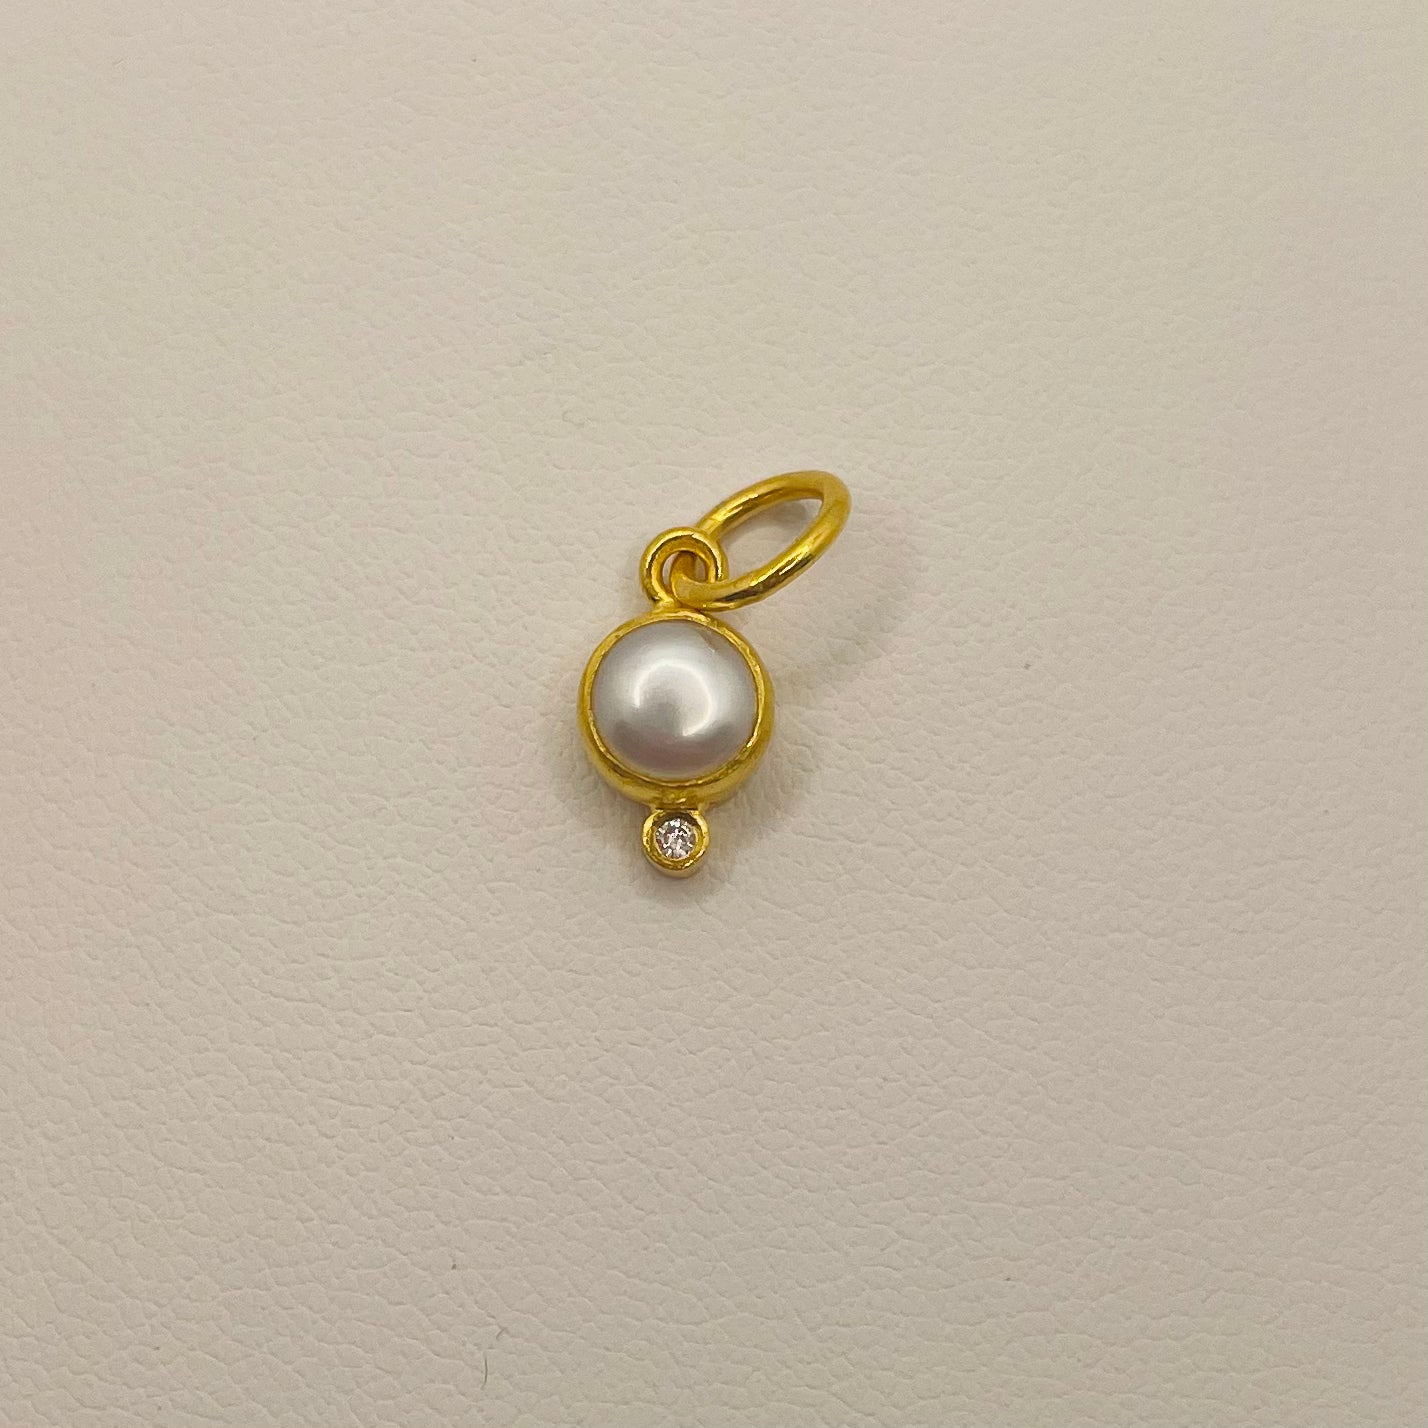 vintage pearl and diamond charm